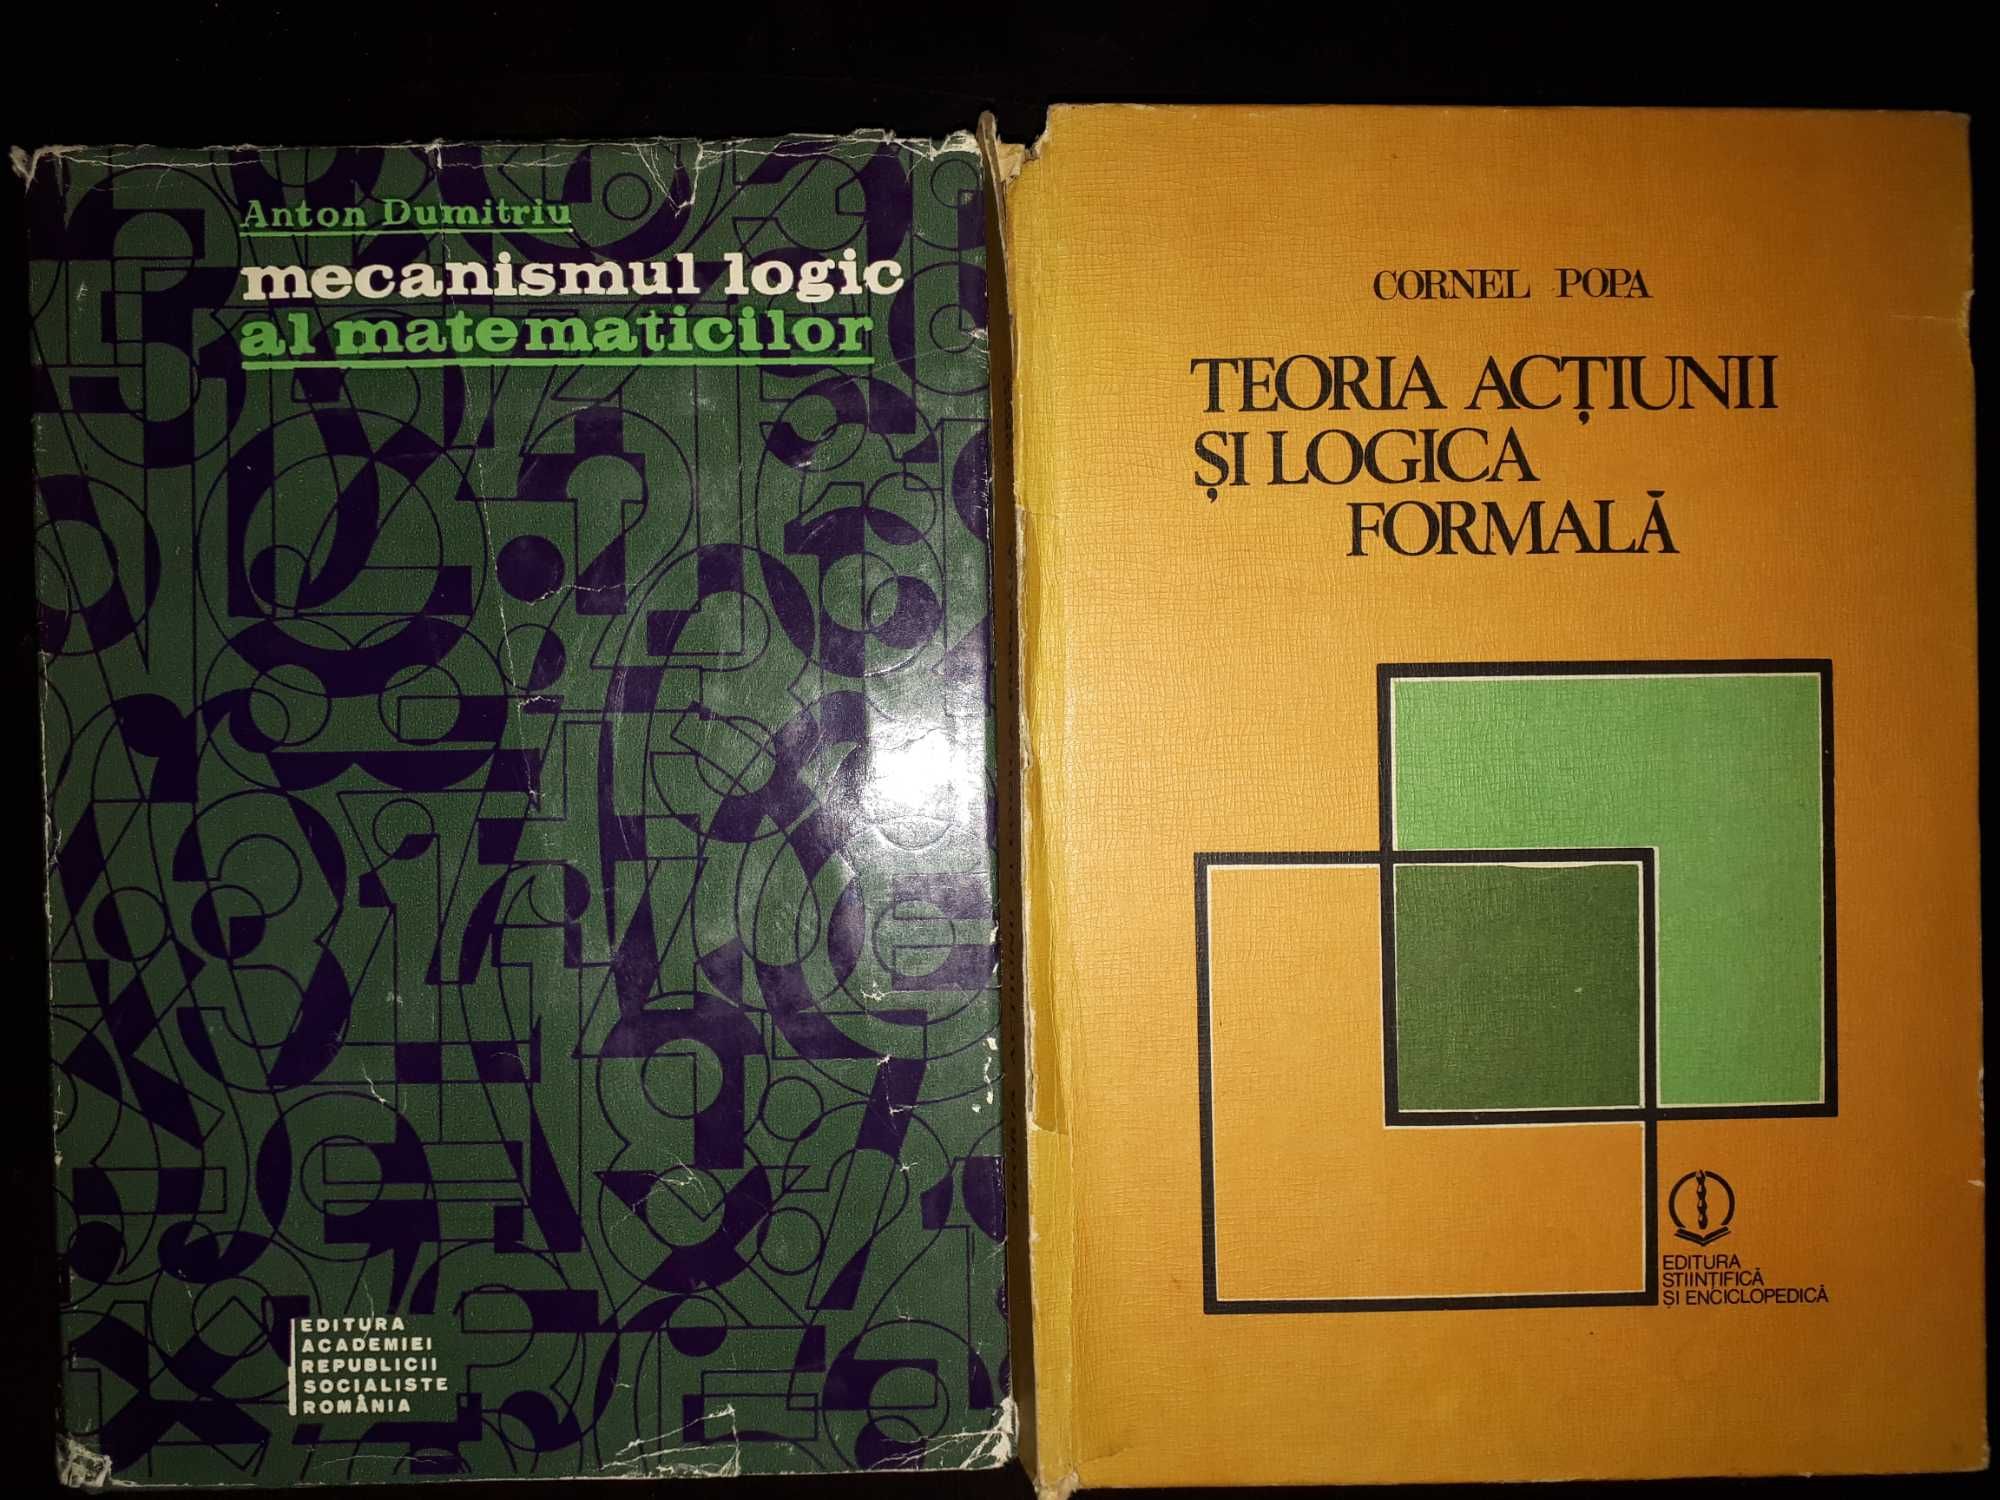 Mecanismul logic al matematicilor, Anton Dumitriu, Istoria logicii